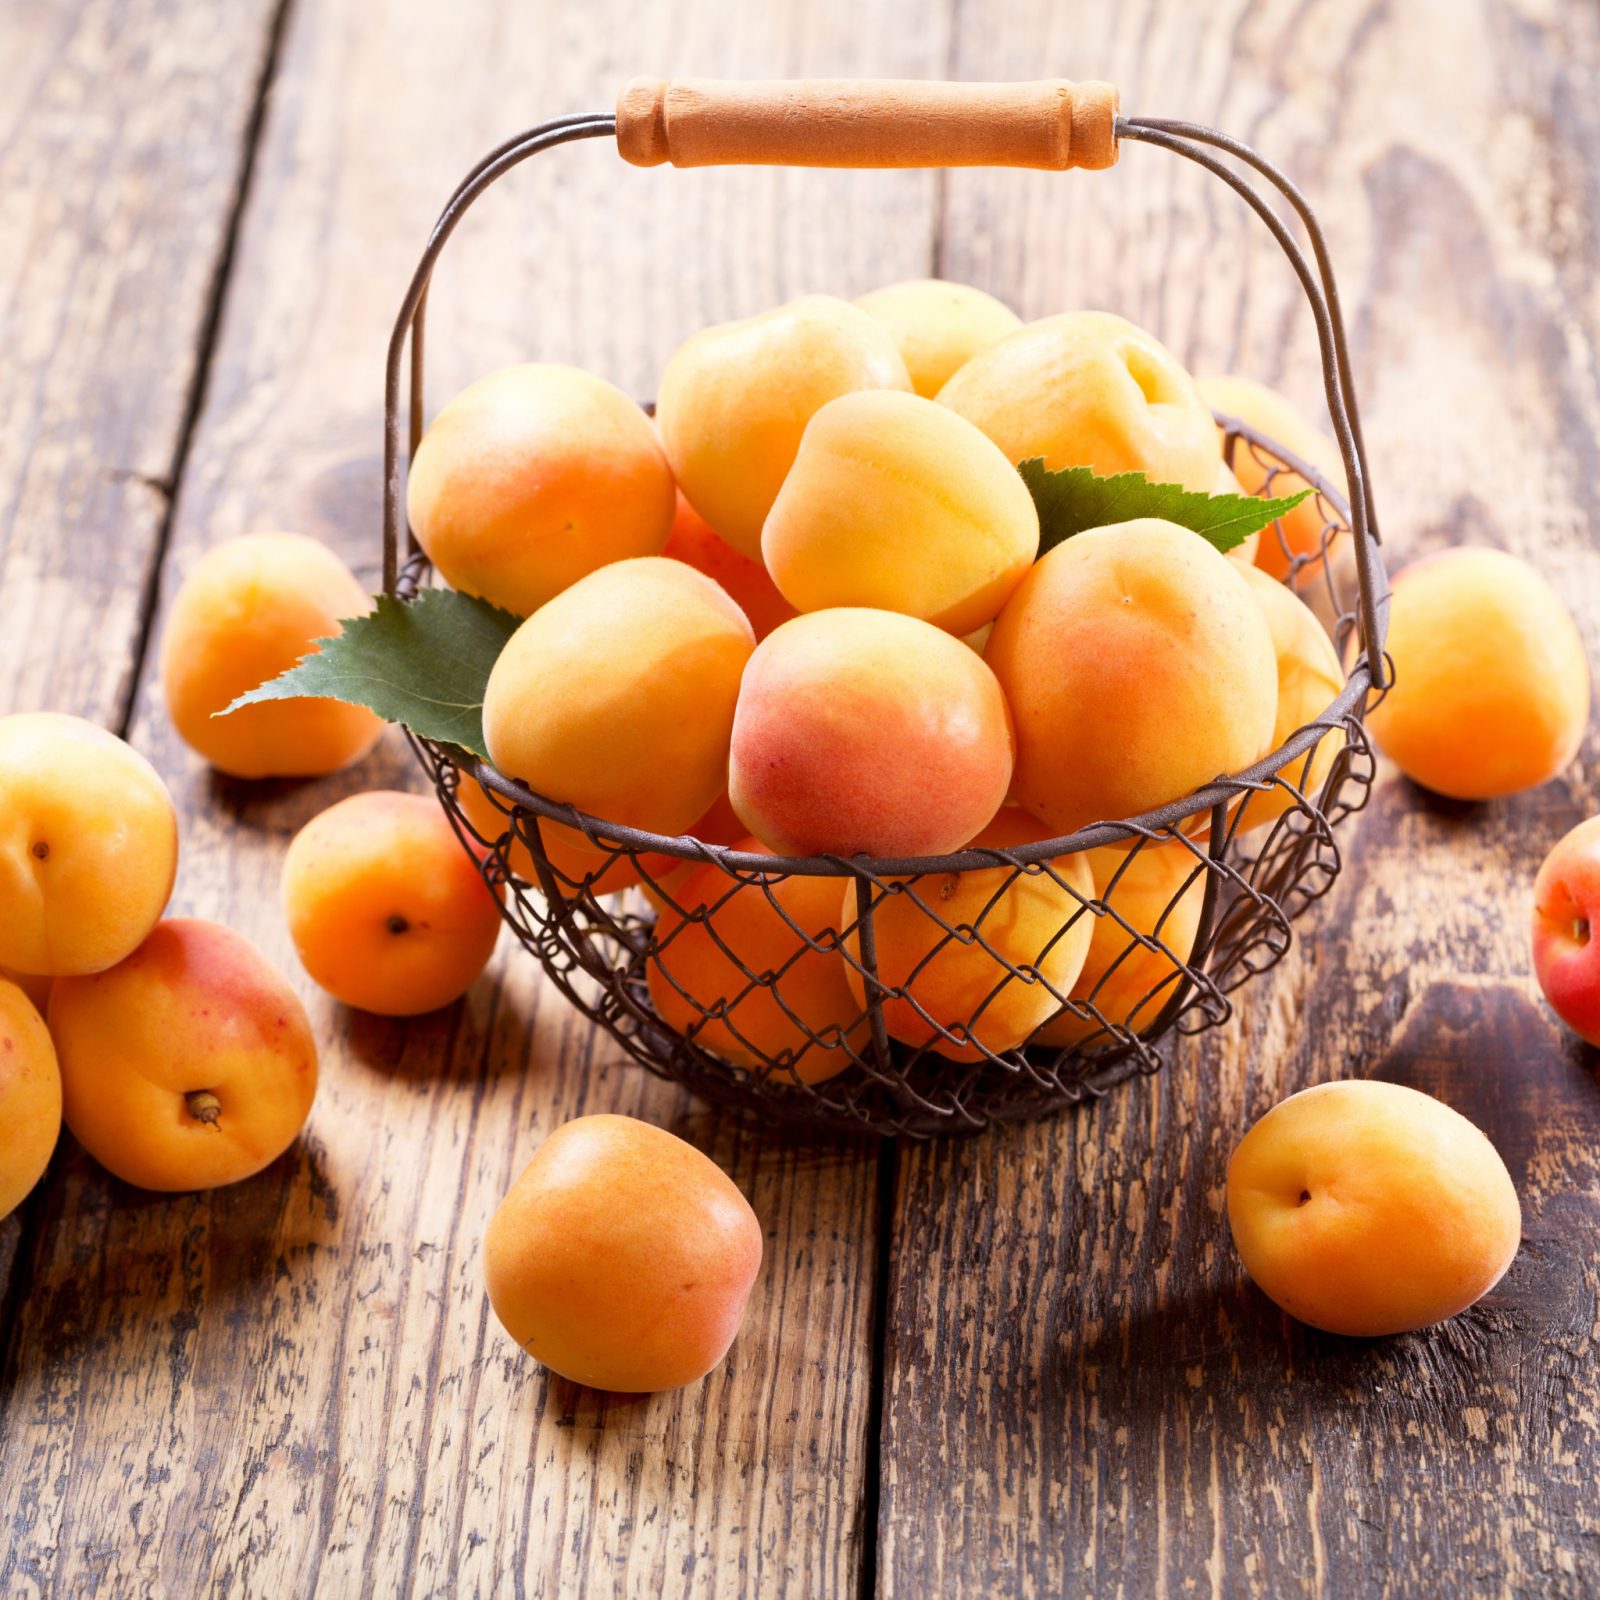 Персик-абрикос Медовый месяц